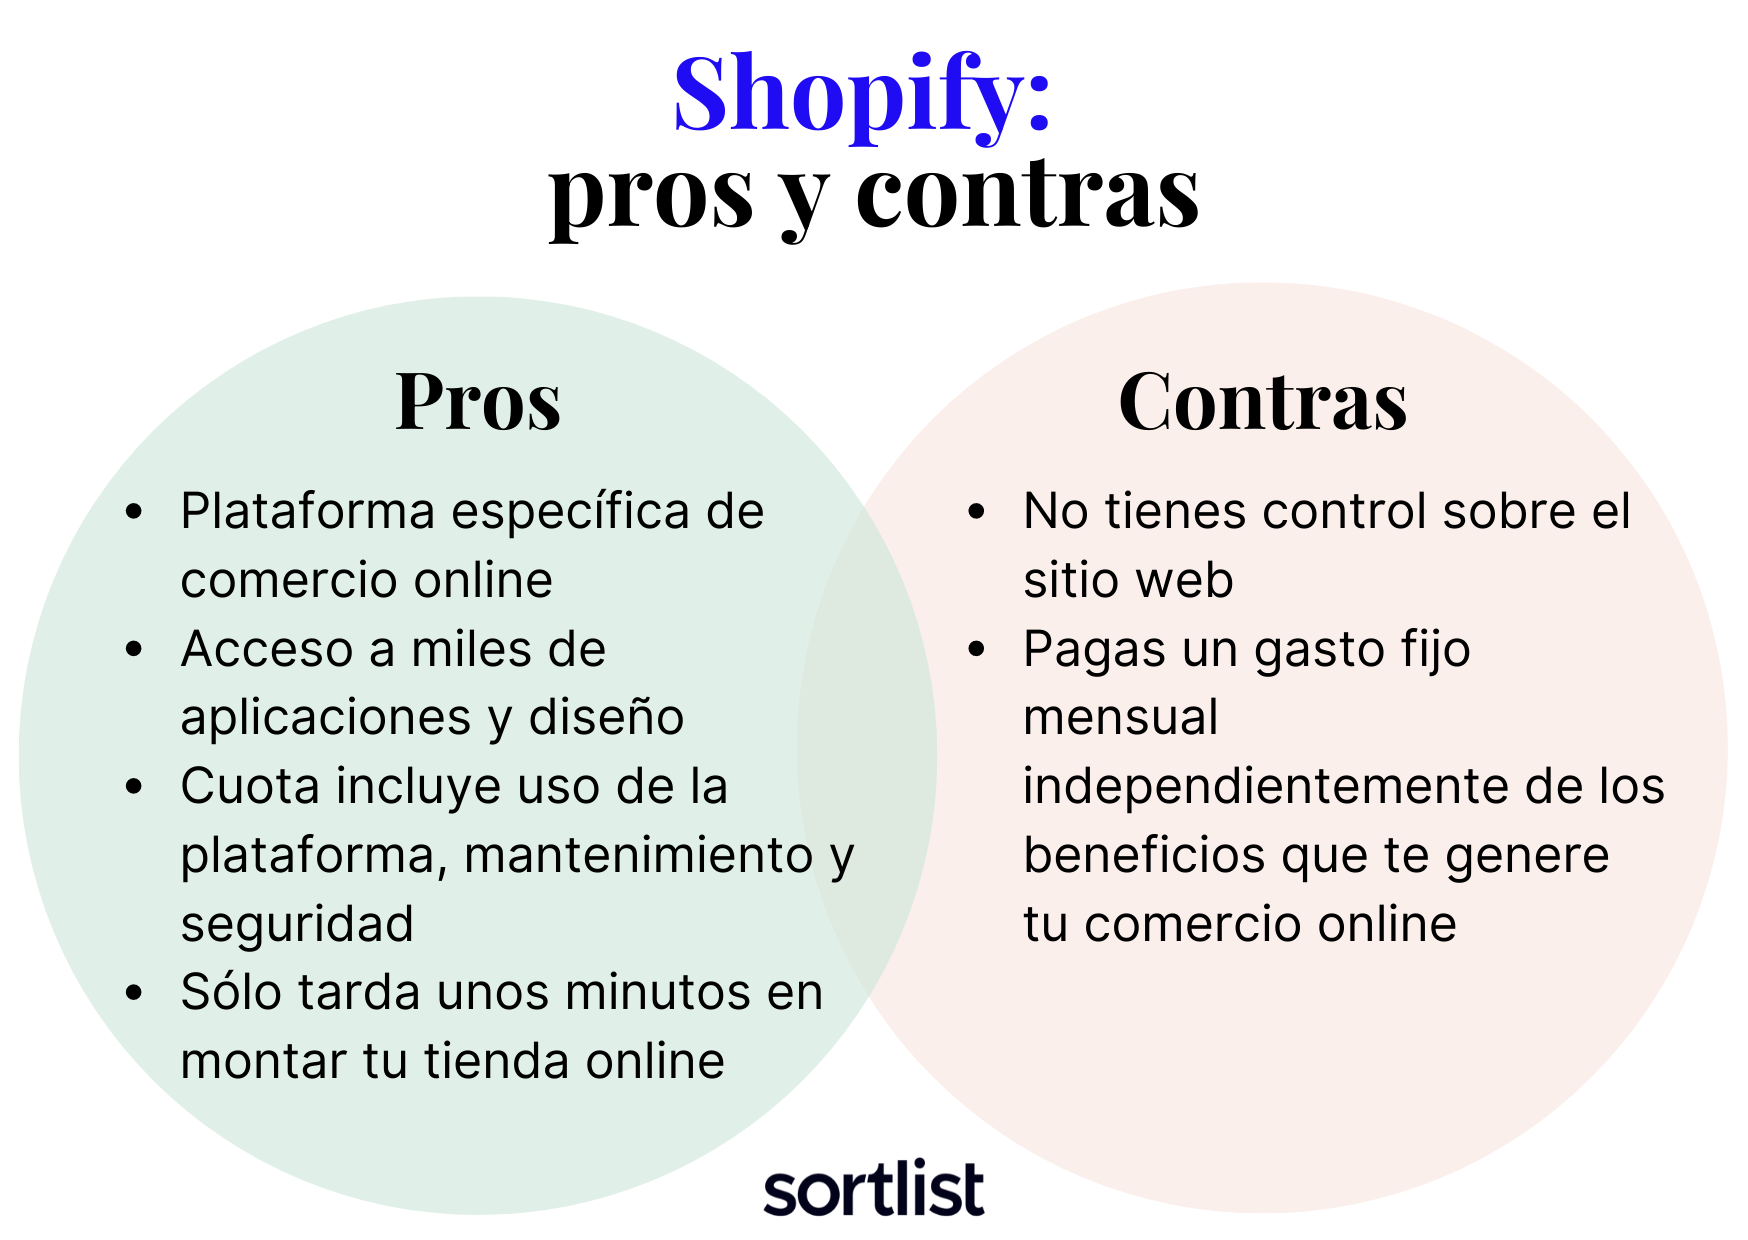 Woocommerce vs shopify: pros y contras de shopify